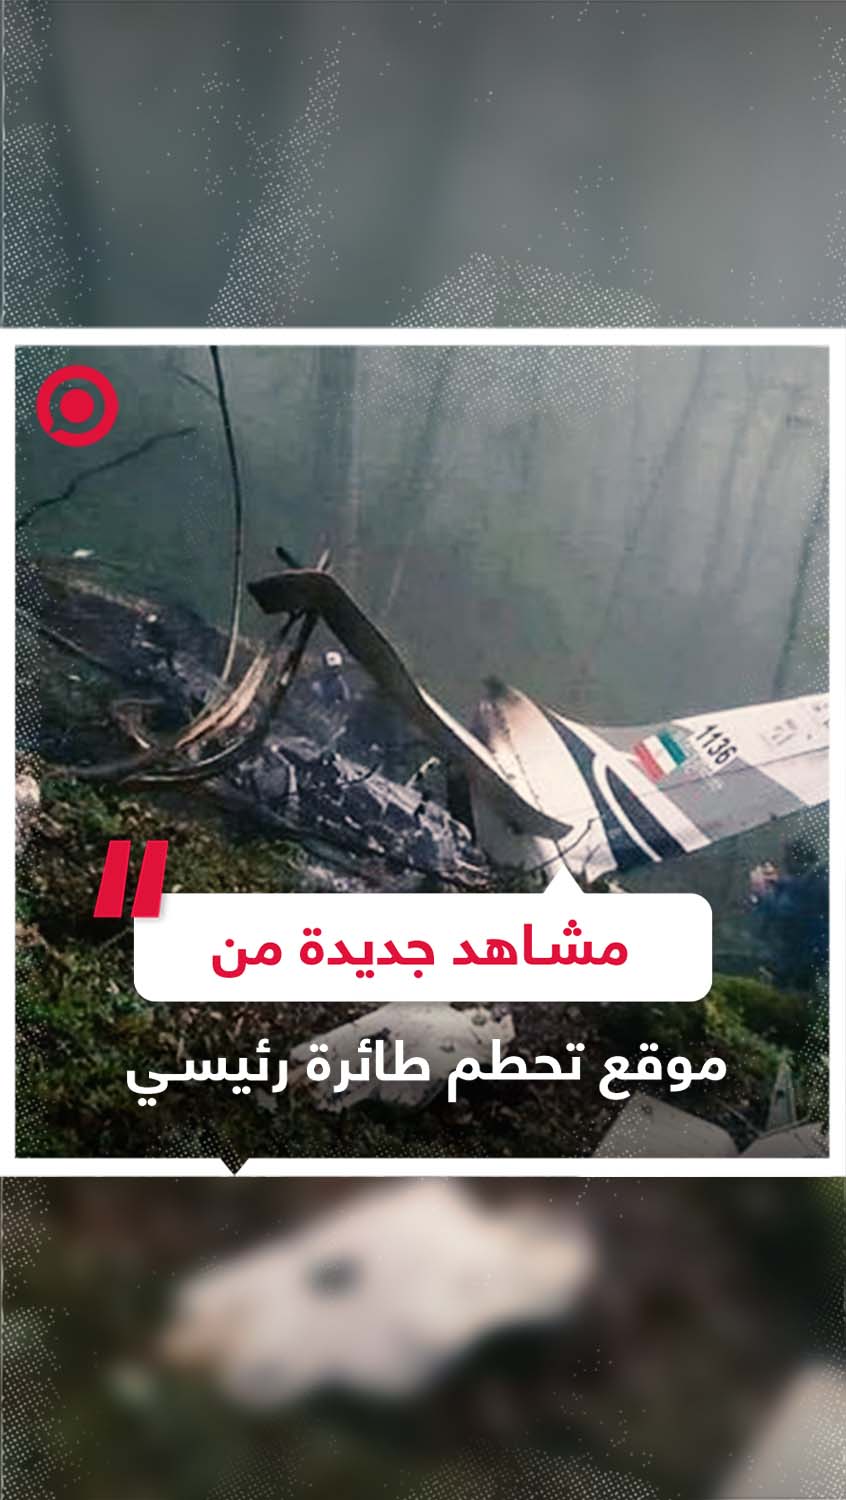 مشاهد جديدة من موقع تحطم طائرة الرئيس الإيراني